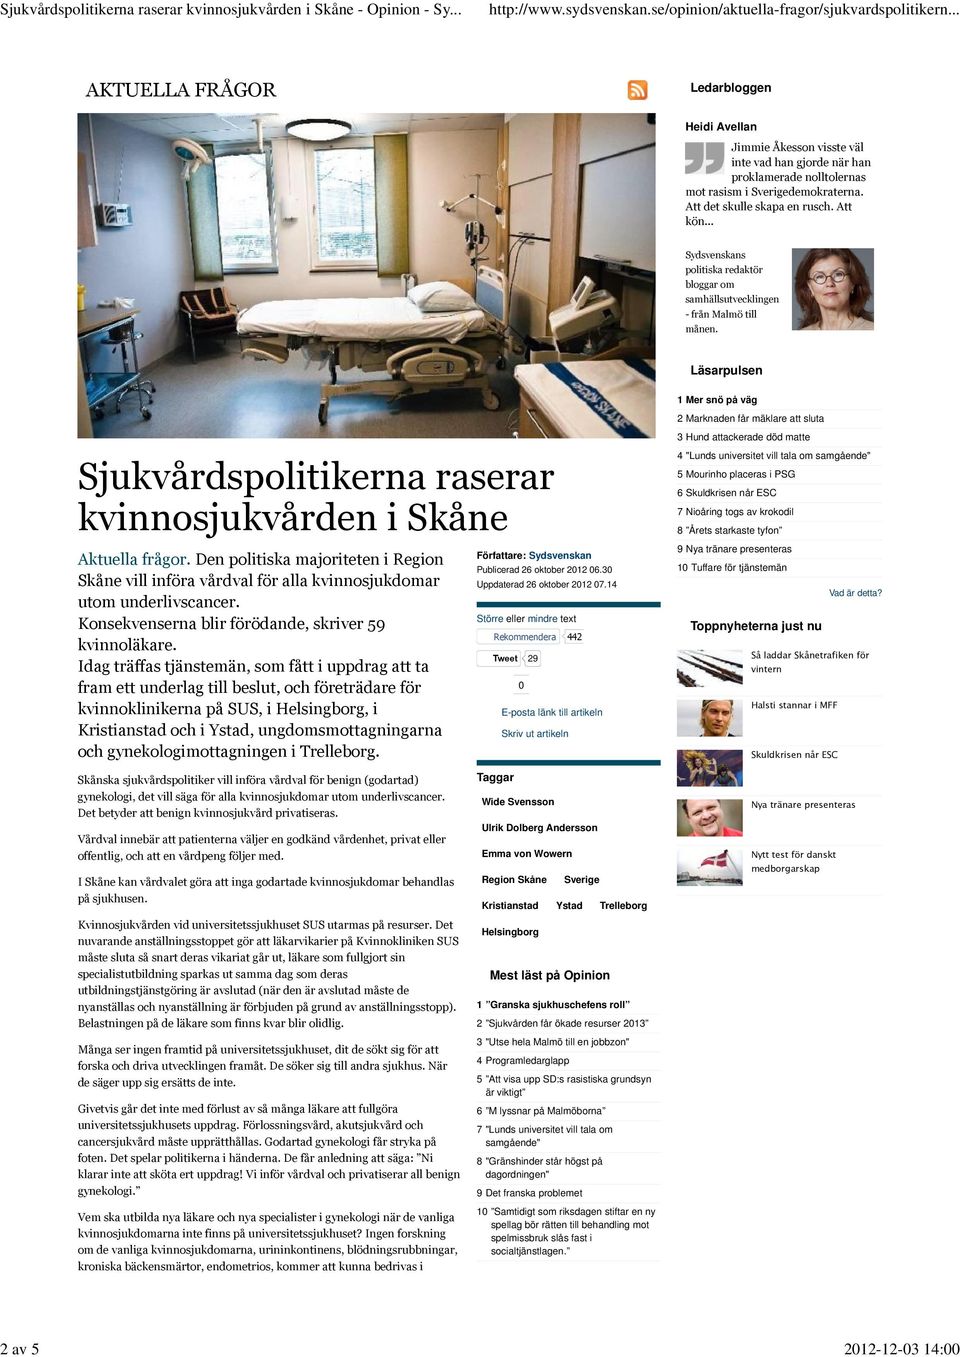 Den politiska majoriteten i Region Skåne vill införa vårdval för alla kvinnosjukdomar utom underlivscancer. Konsekvenserna blir förödande, skriver 59 kvinnoläkare.